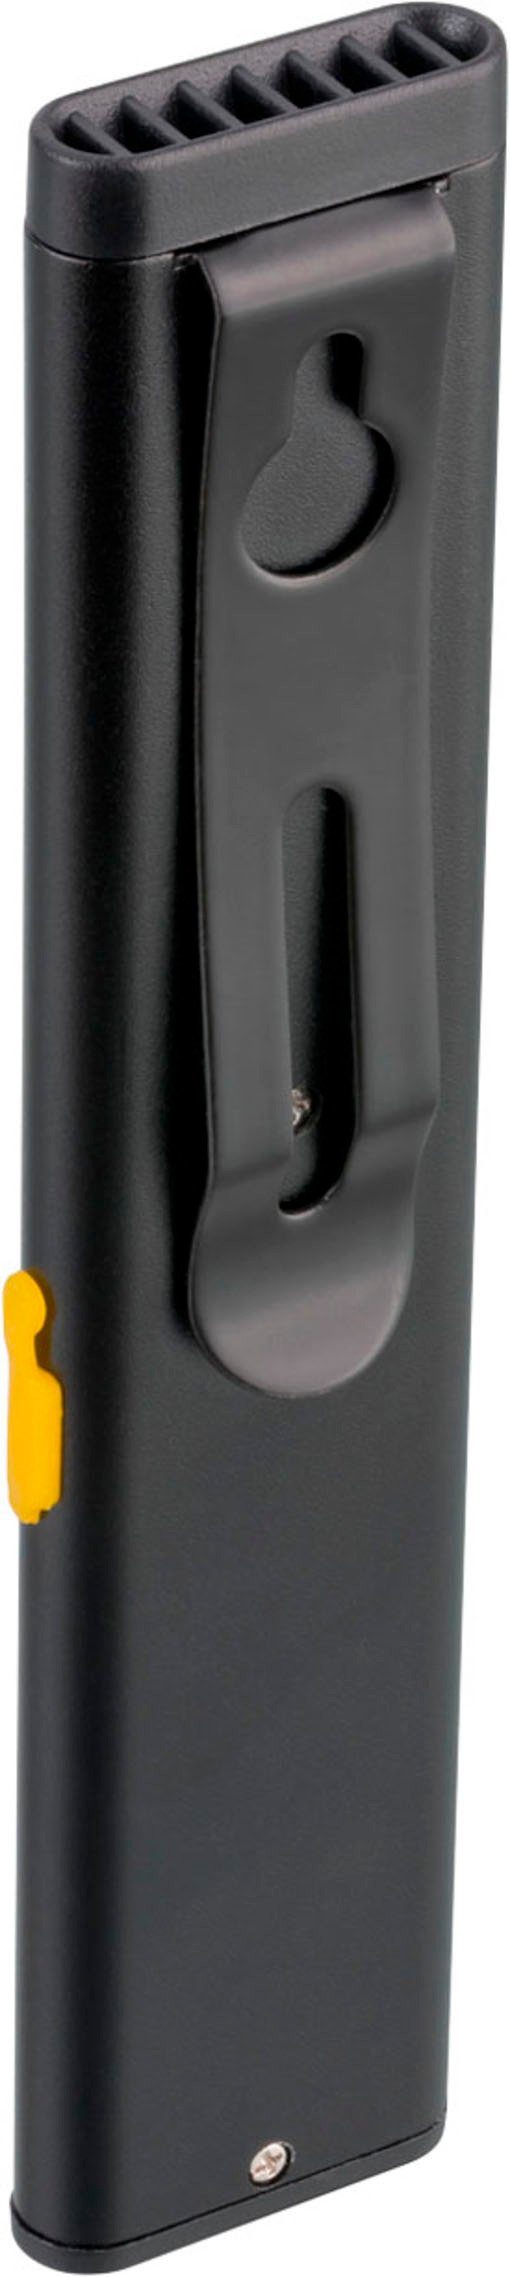 A, und Brennenstuhl mit PL 200 USB-Kabel Akku Handleuchte integriertem